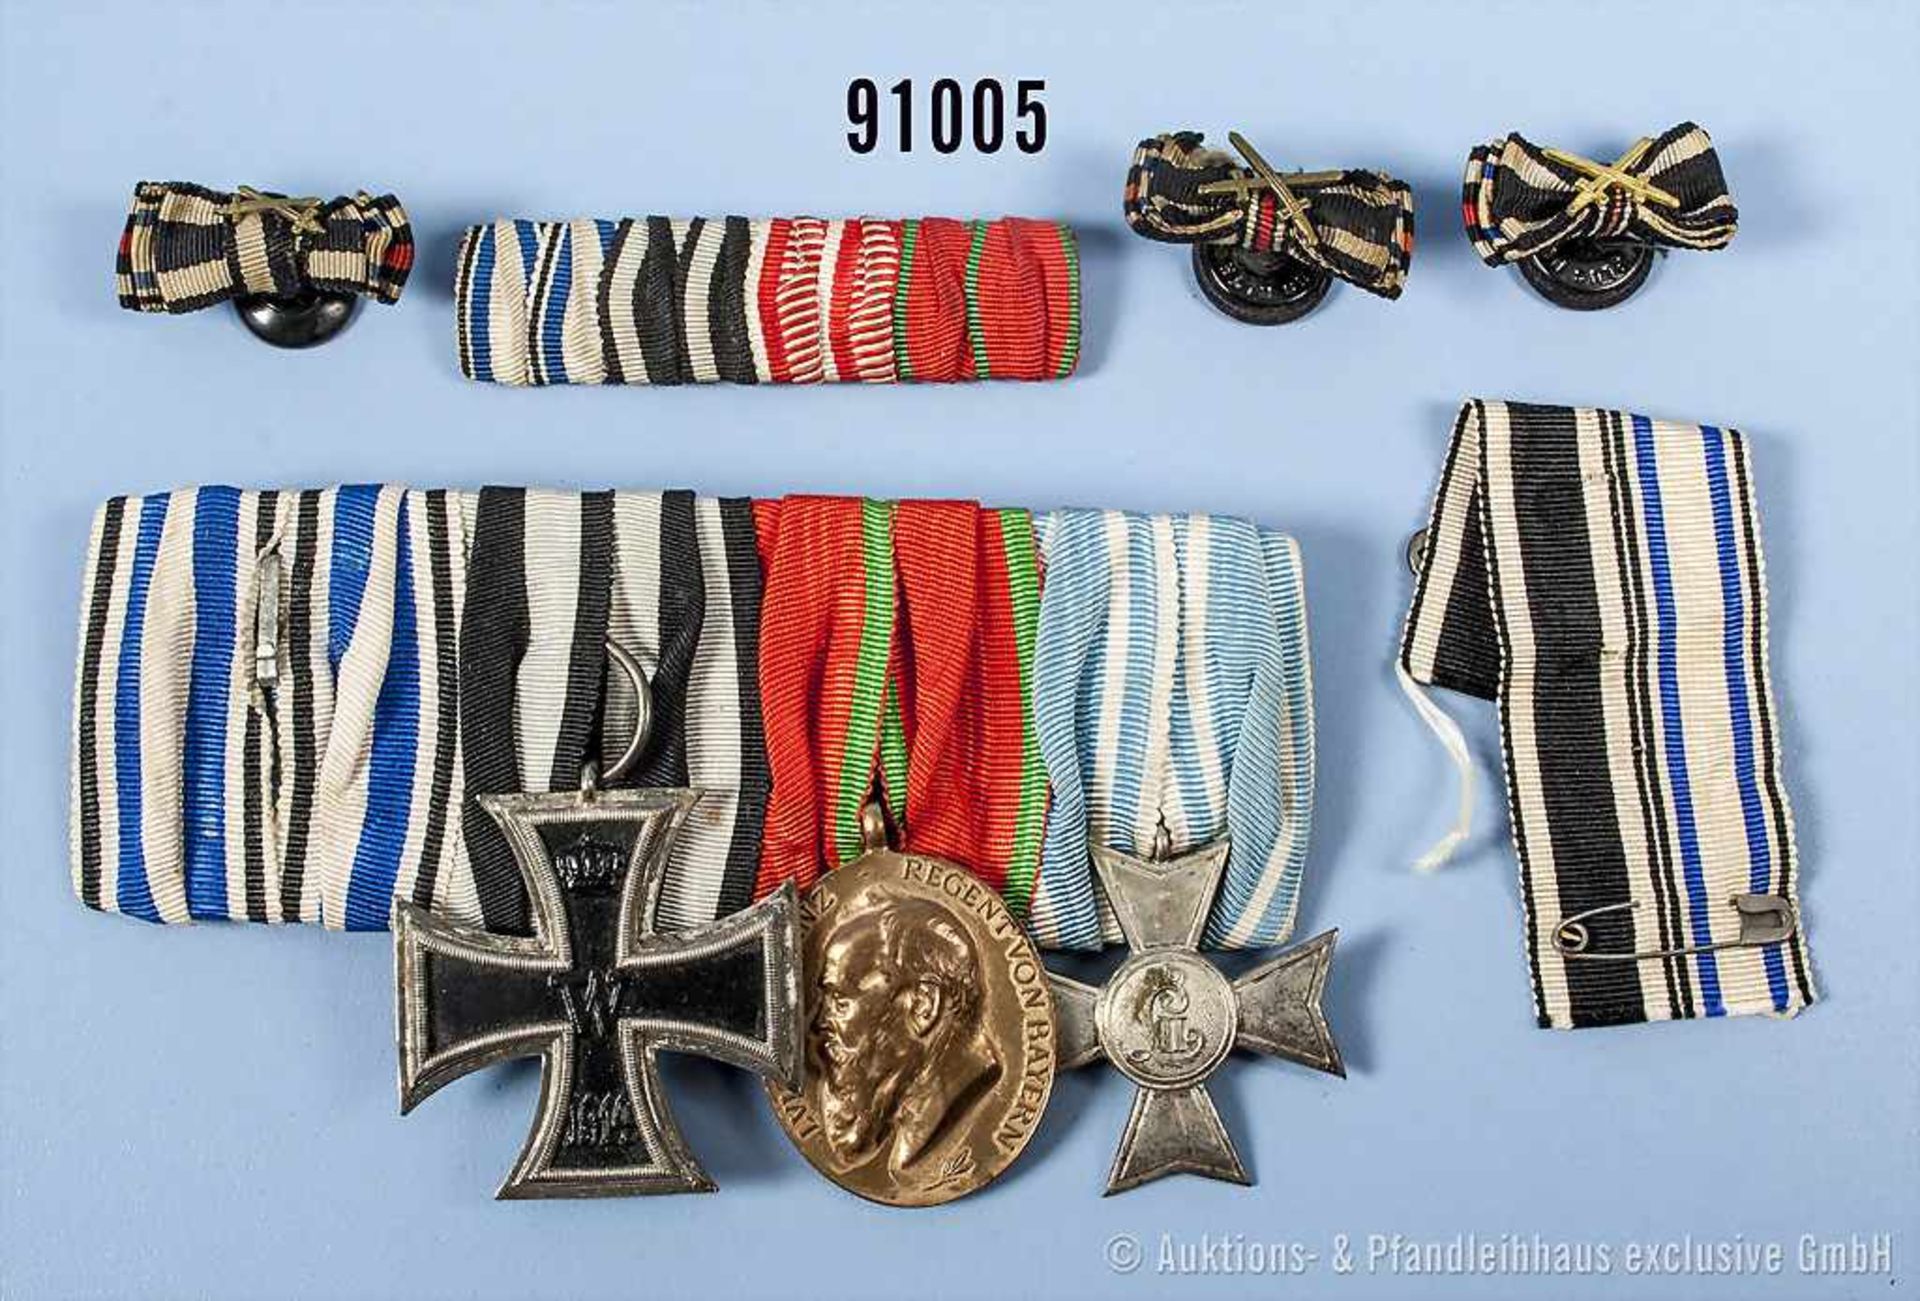 Konv. 4er Ordenspange, Bayern Ordensband vom MVO, EK 2 1914, Jubiläumsmedaille für die Bayerische